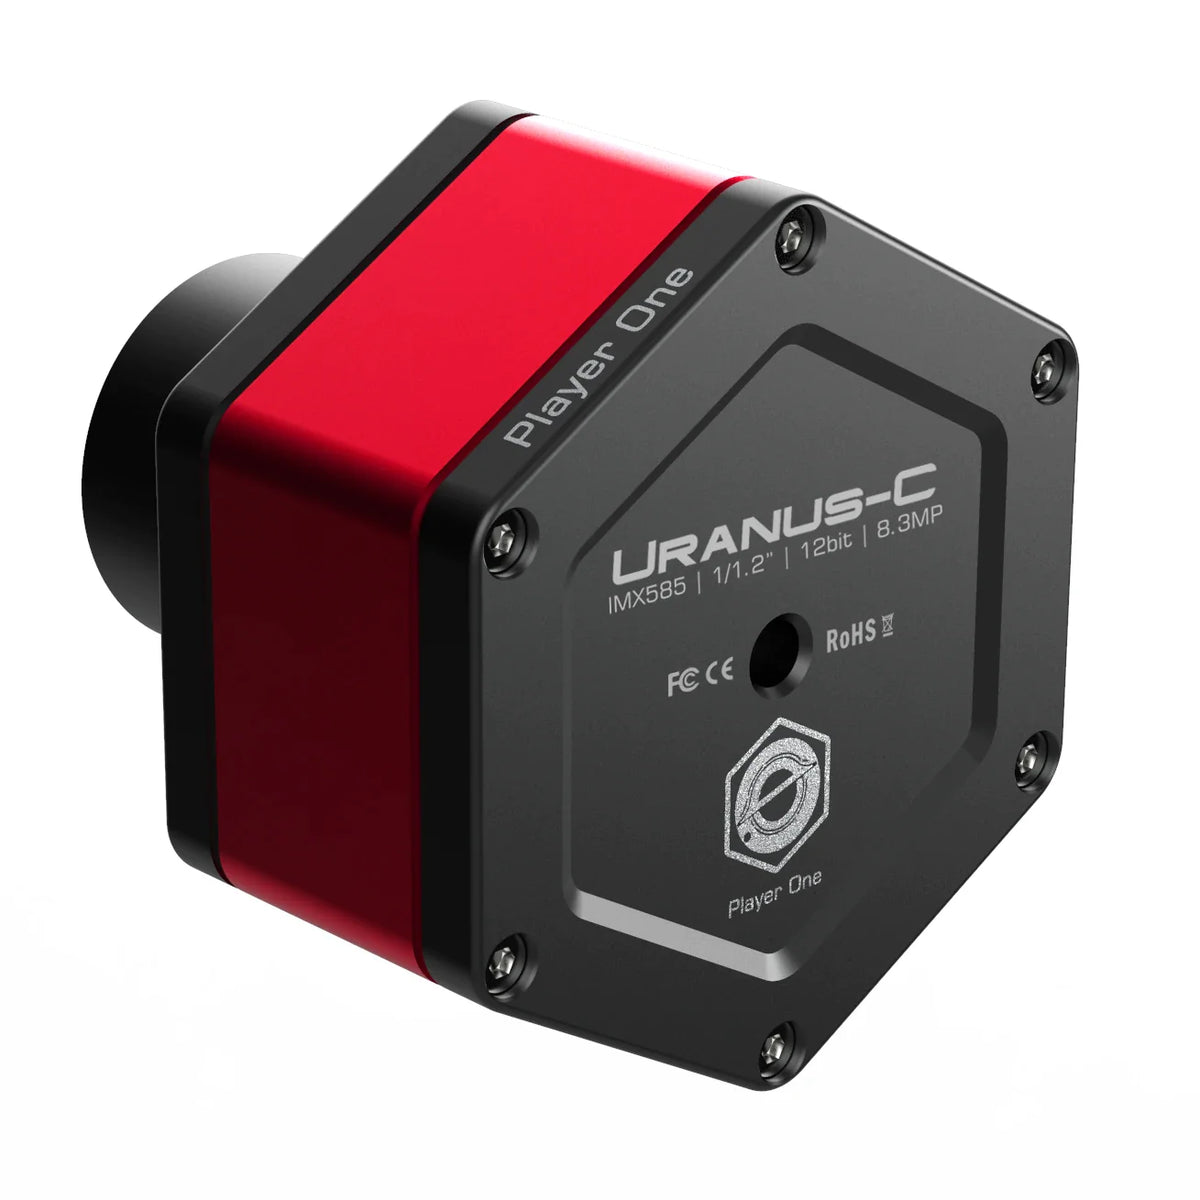 Player One Uranus-C USB3.0 Color Camera IMX585 (Uranus-C